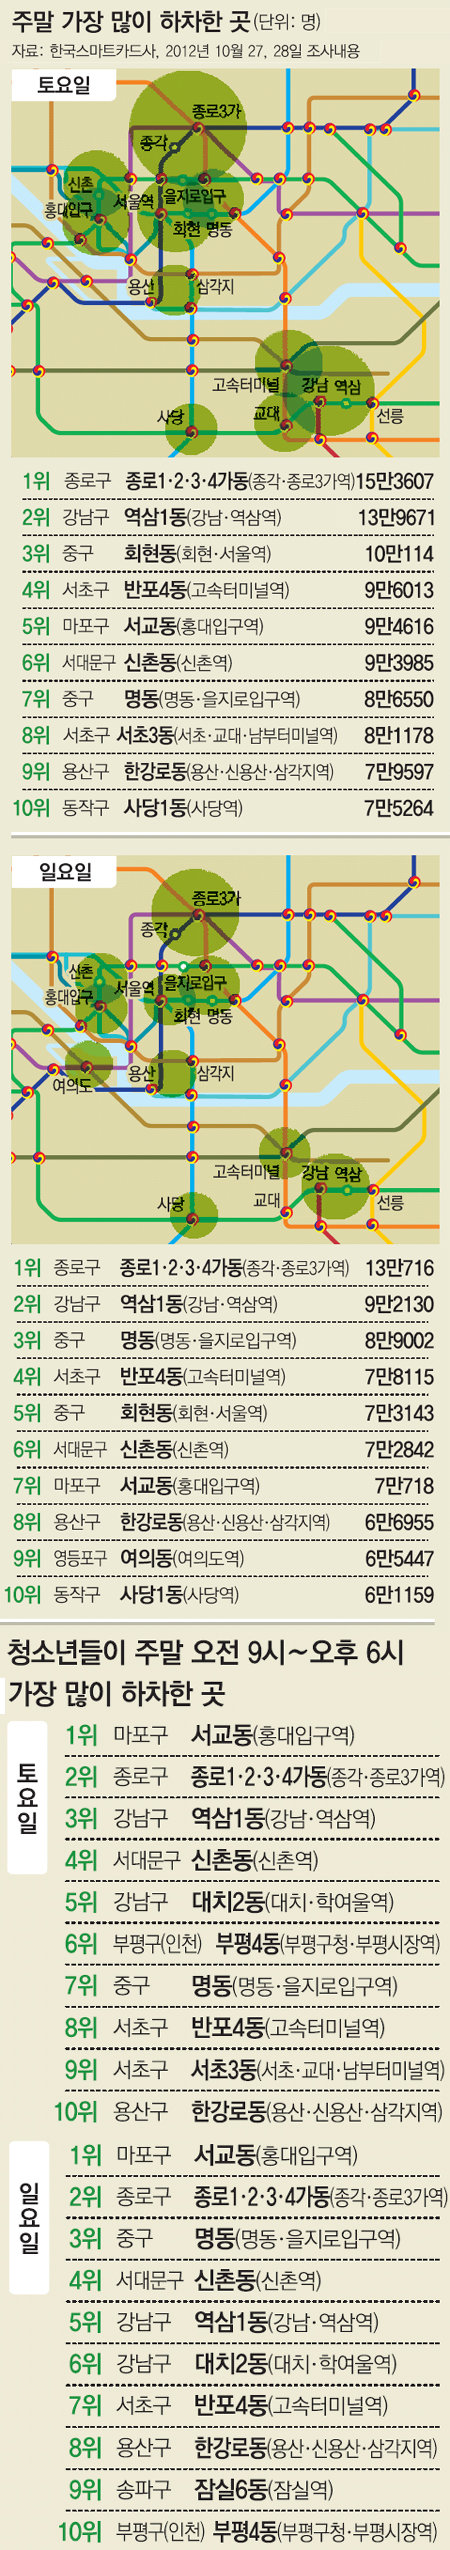 서울 대중교통 이용객 빅데이터 분석